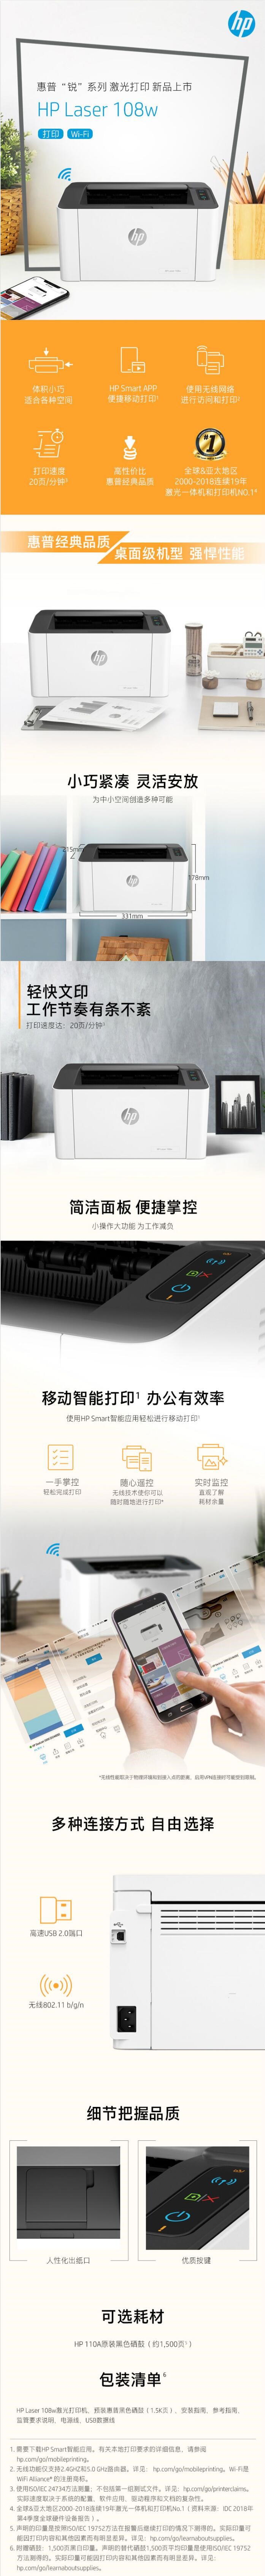 惠普 （HP）108w A4幅面 黑白激光打印机 锐系列新品激光打印机(图4)